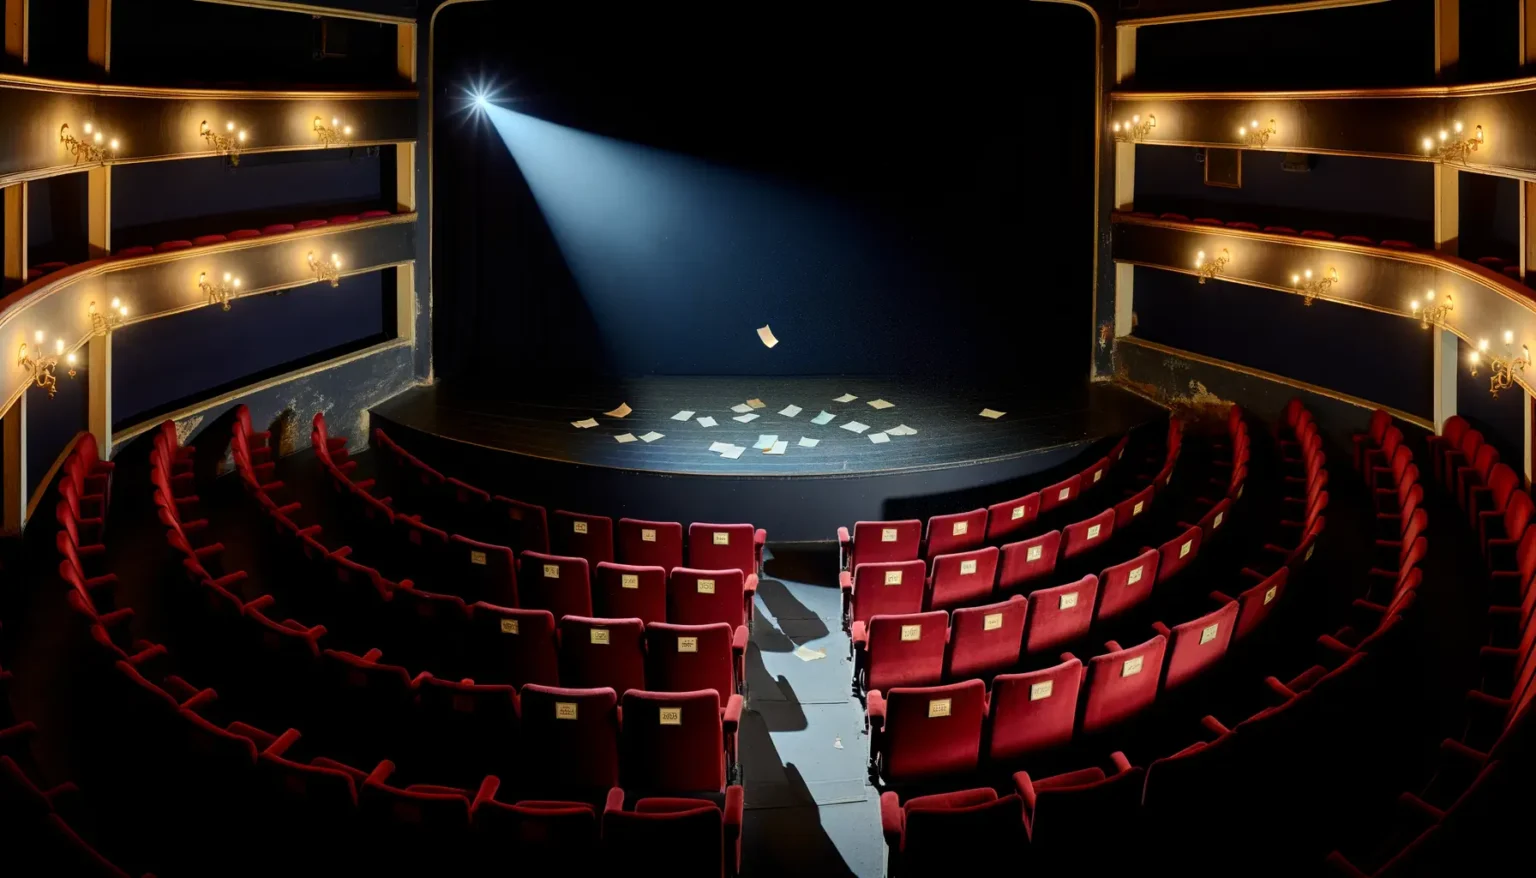 Ein leeres Theater mit roten Sitzreihen und mehrstufigen Balkonen, die mit blauen Wänden und goldenen Verzierungen akzentuiert sind. Ein einzelner Scheinwerfer beleuchtet die leere Bühne, auf der mehrere Blätter Papier verstreut liegen.